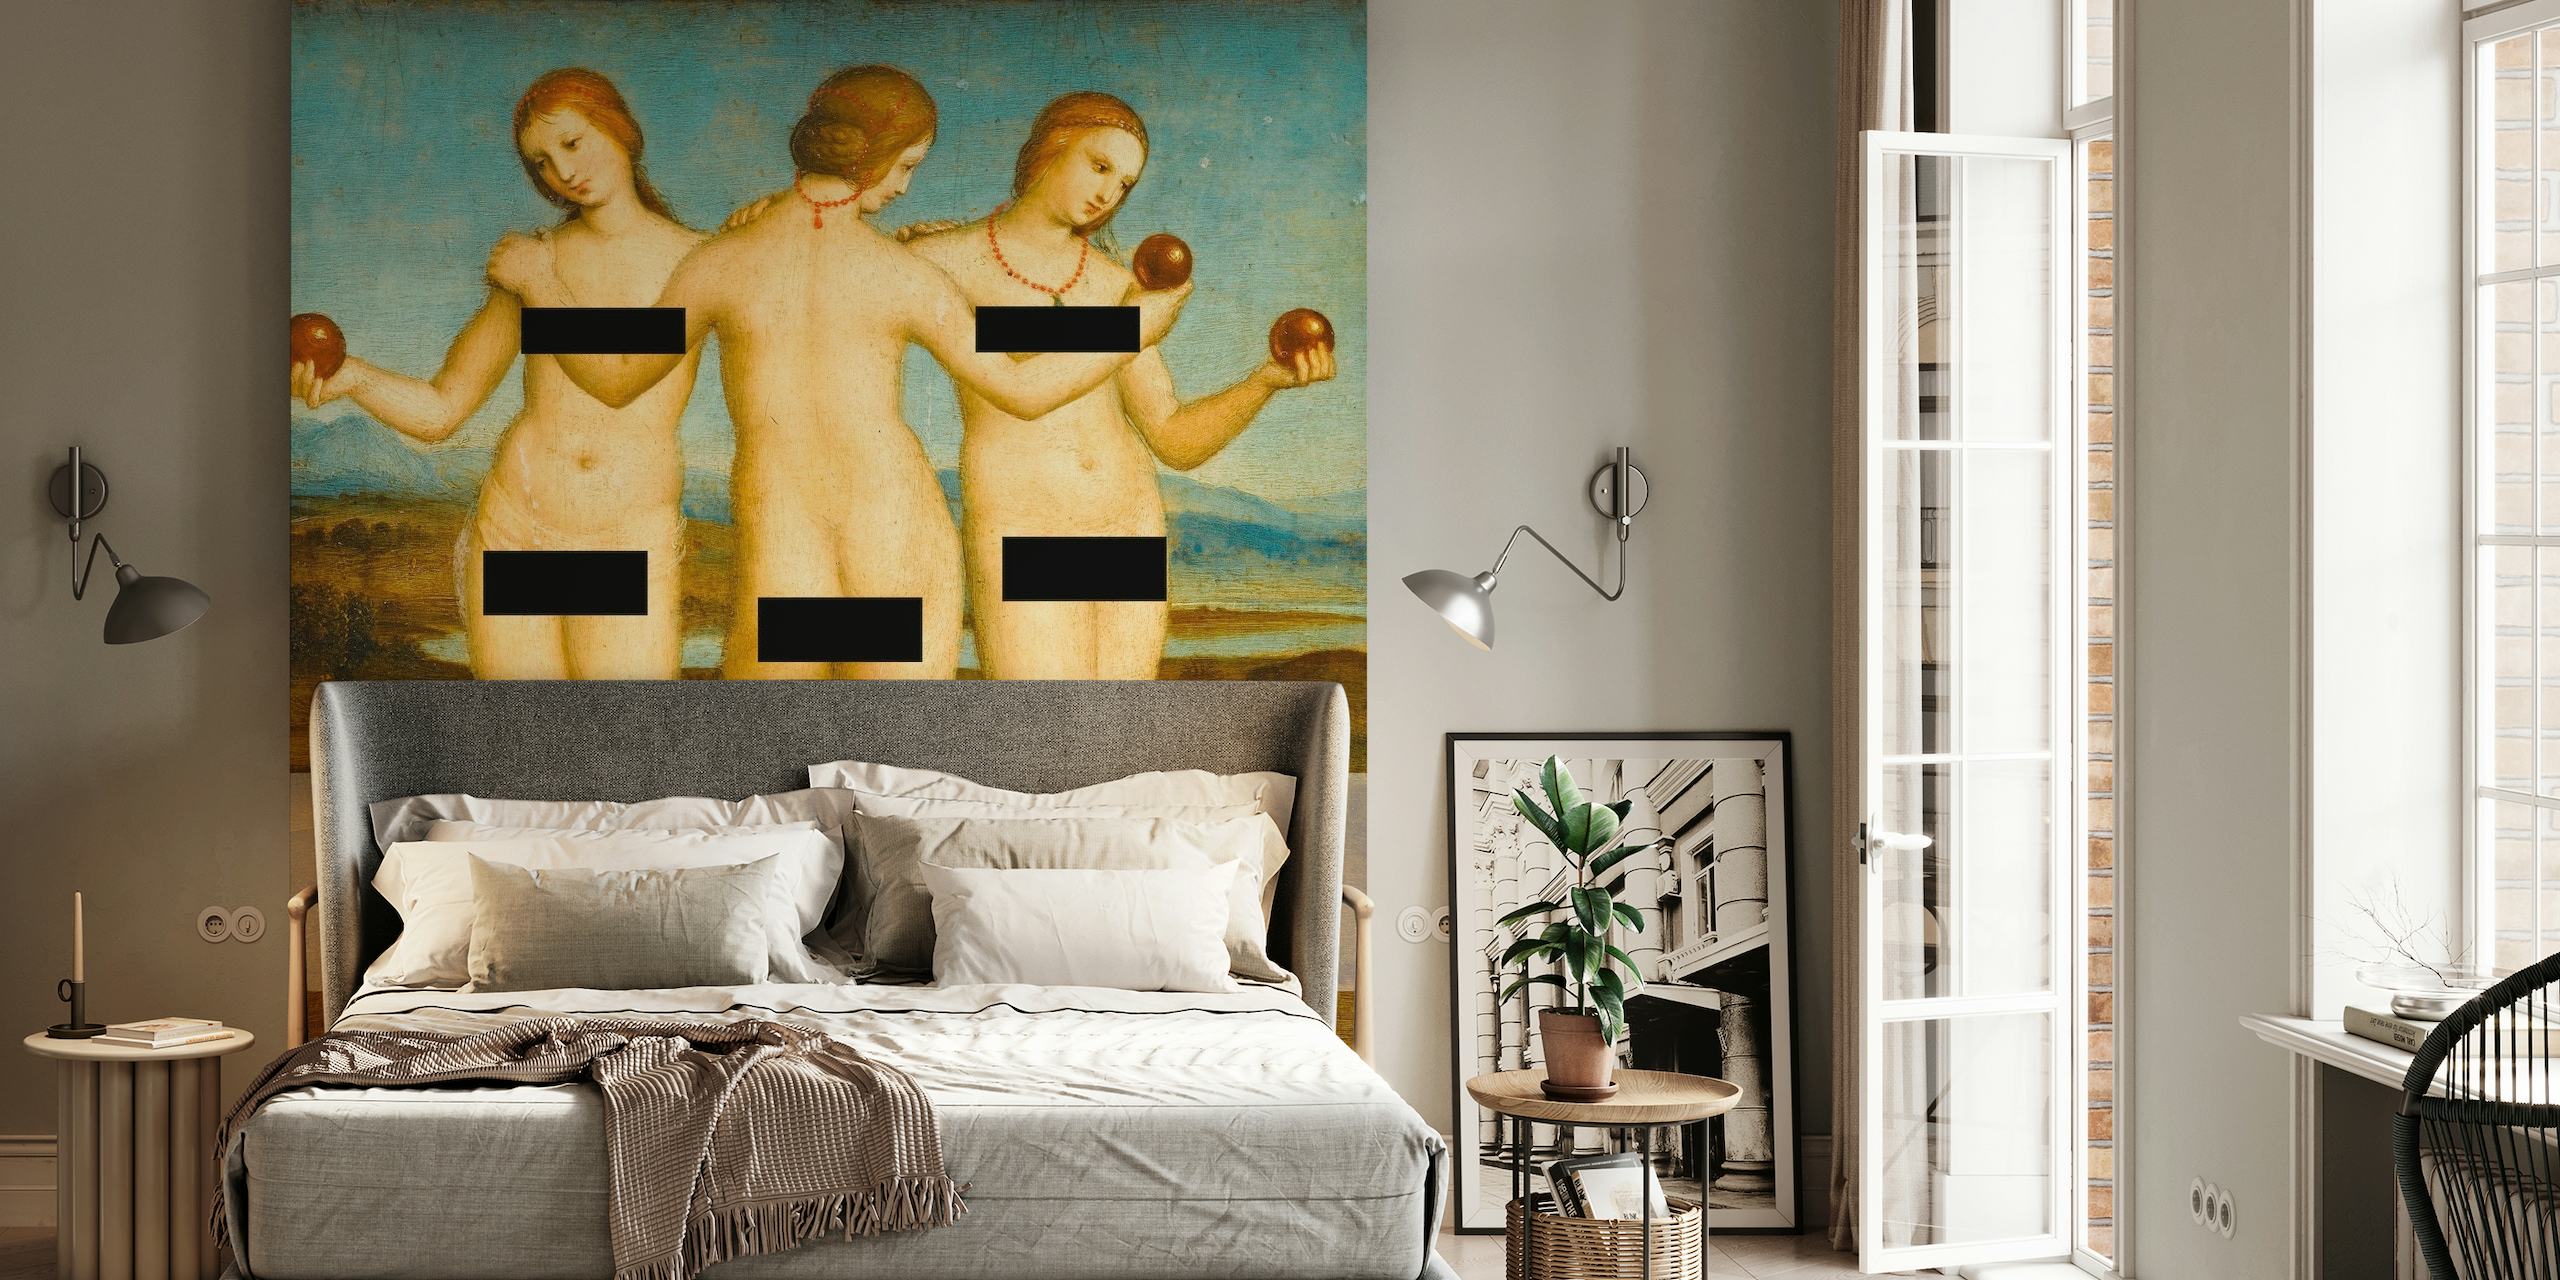 Zensiertes Bild der mythologischen Drei Grazien in einem klassischen Wandgemälde für die Inneneinrichtung